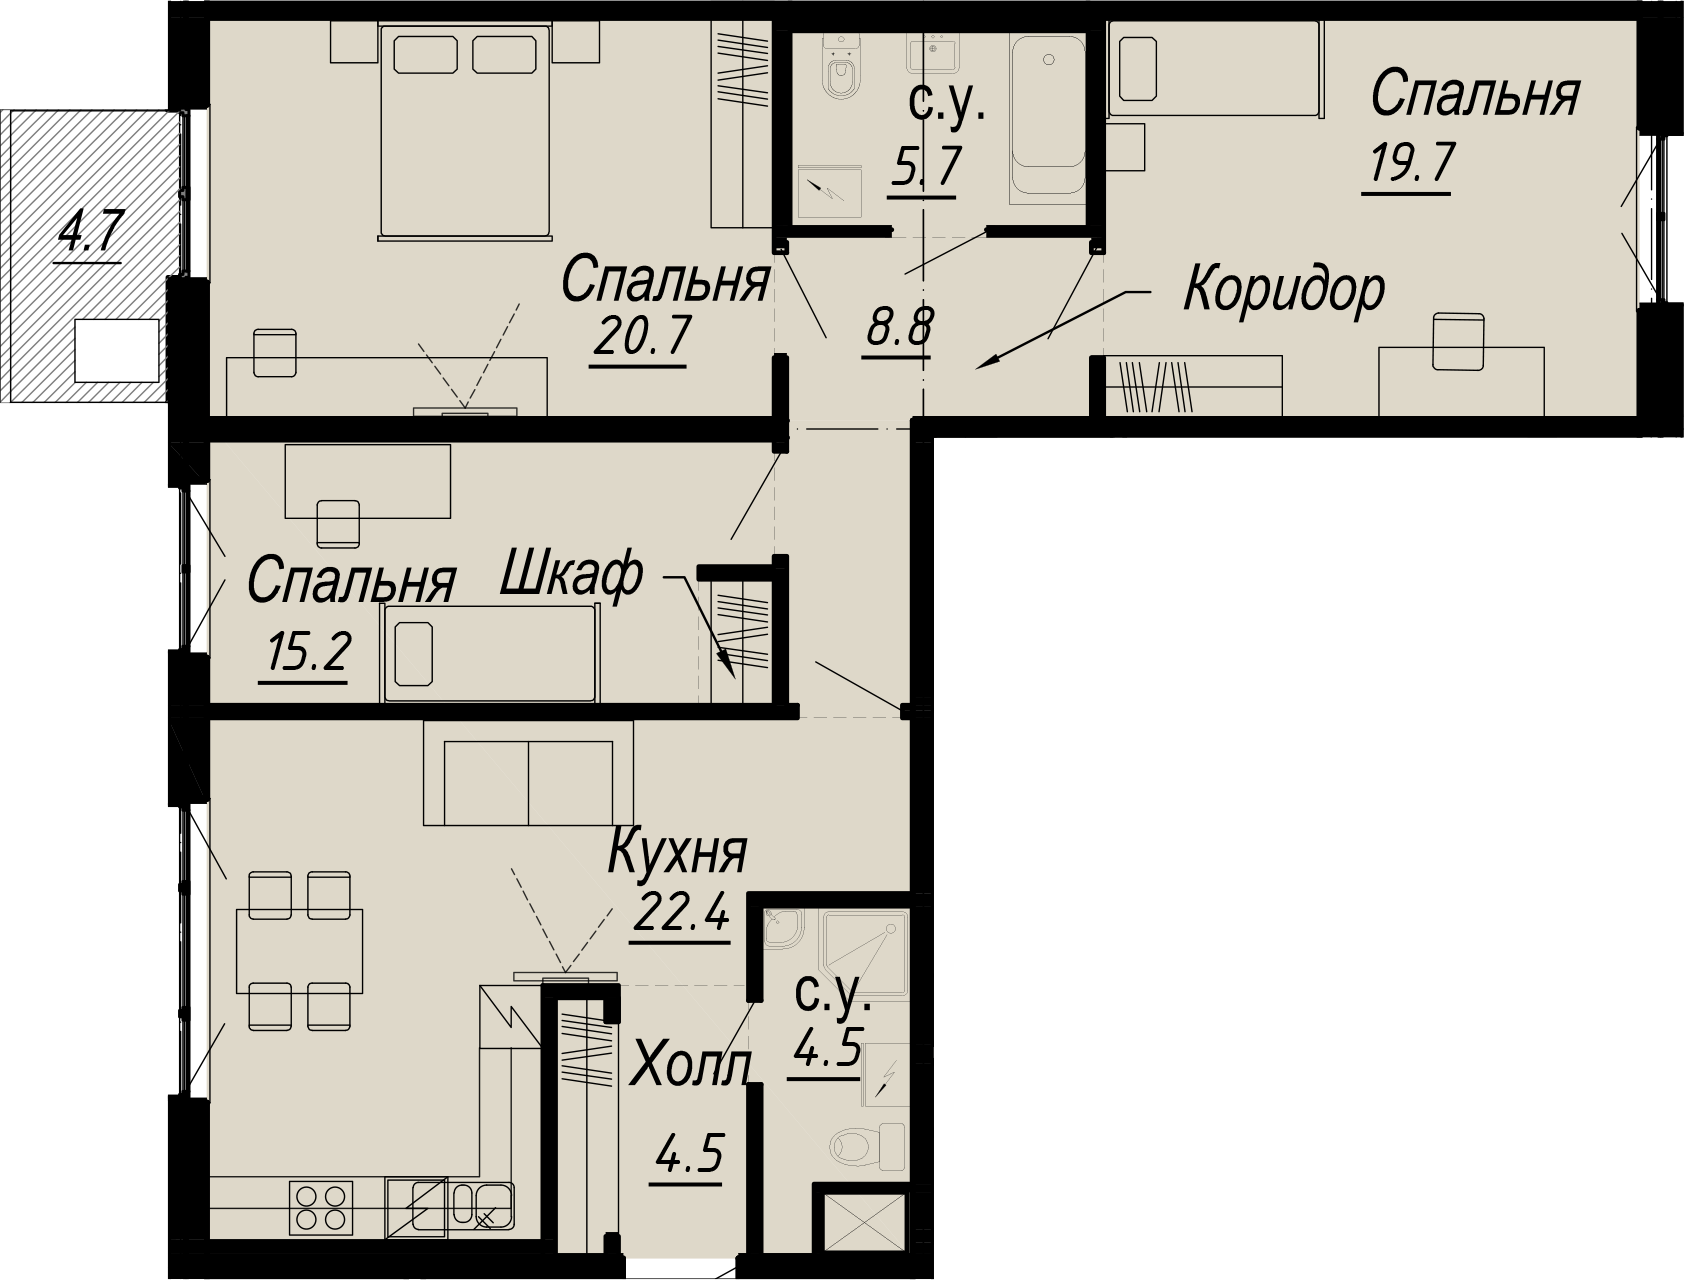 3-комнатная квартира  №10-5 в Meltzer Hall: 105.69 м², этаж 5 - купить в Санкт-Петербурге